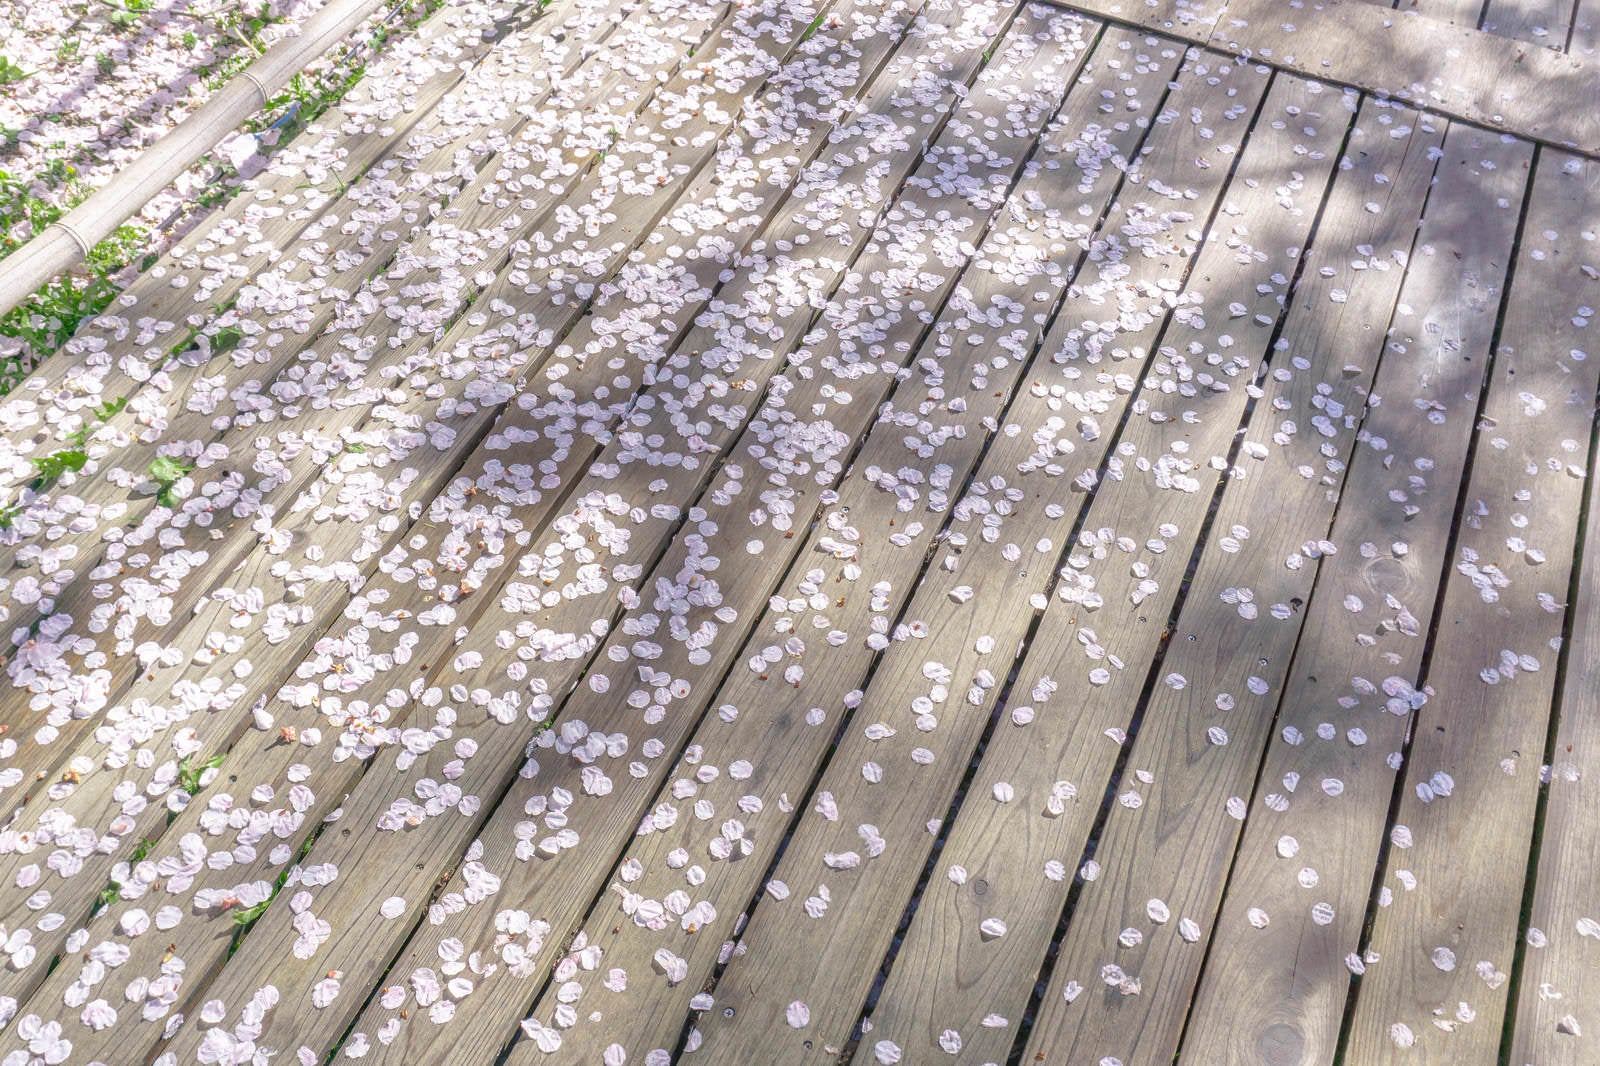 「御室桜の林を巡る板張りの歩道に散る花びら」の写真